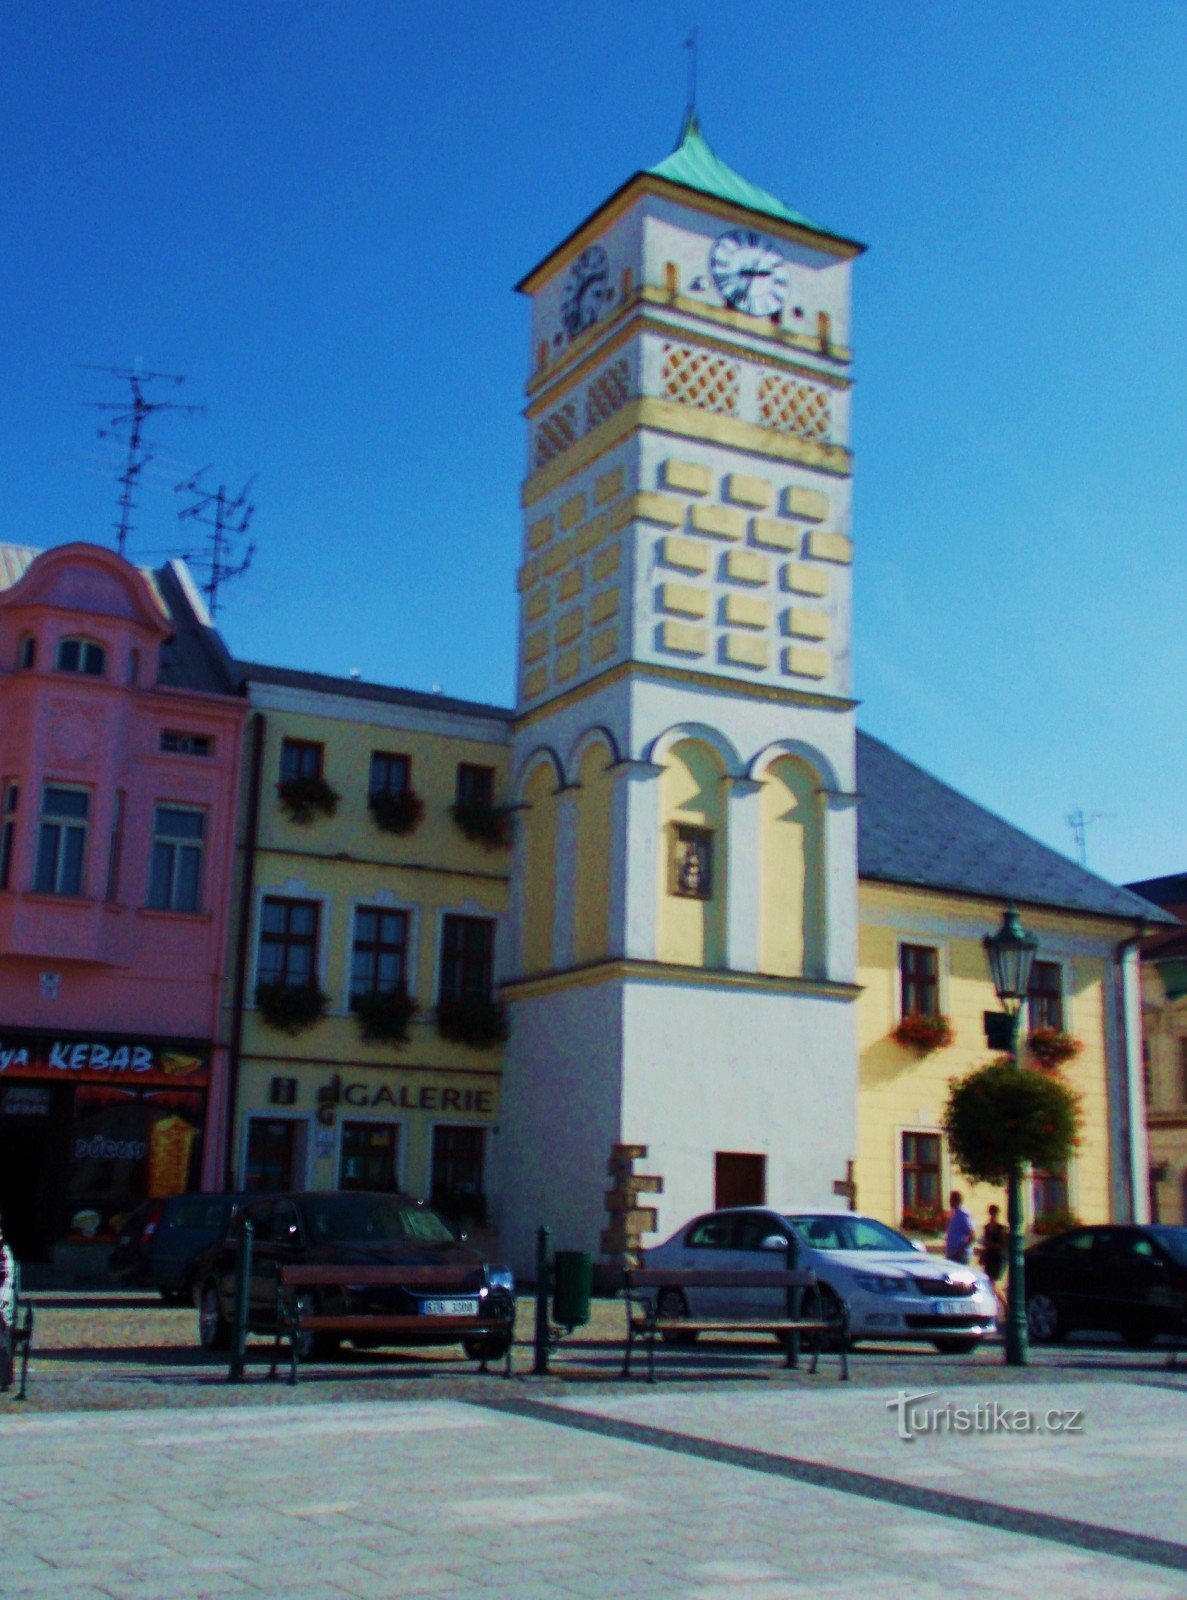 Het stadhuisgebouw - het dominante kenmerk van het Masaryk-plein in Karviná